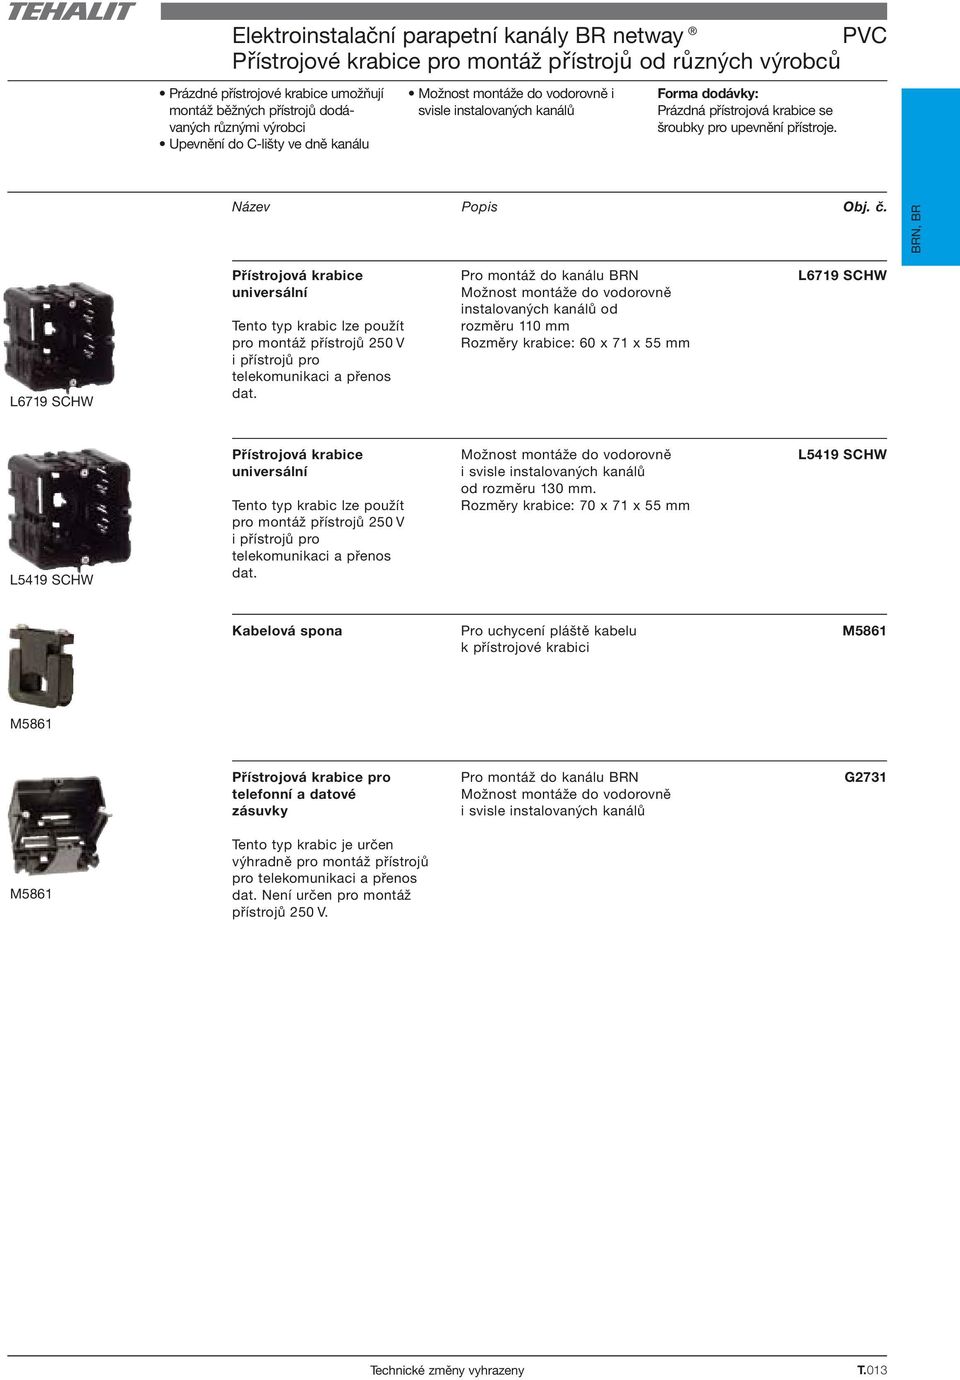 BRN, BR L6719 SCHW Přístrojová krabice universální Tento typ krabic lze použít pro montáž přístrojů 250 V i přístrojů pro telekomunikaci a přenos dat.